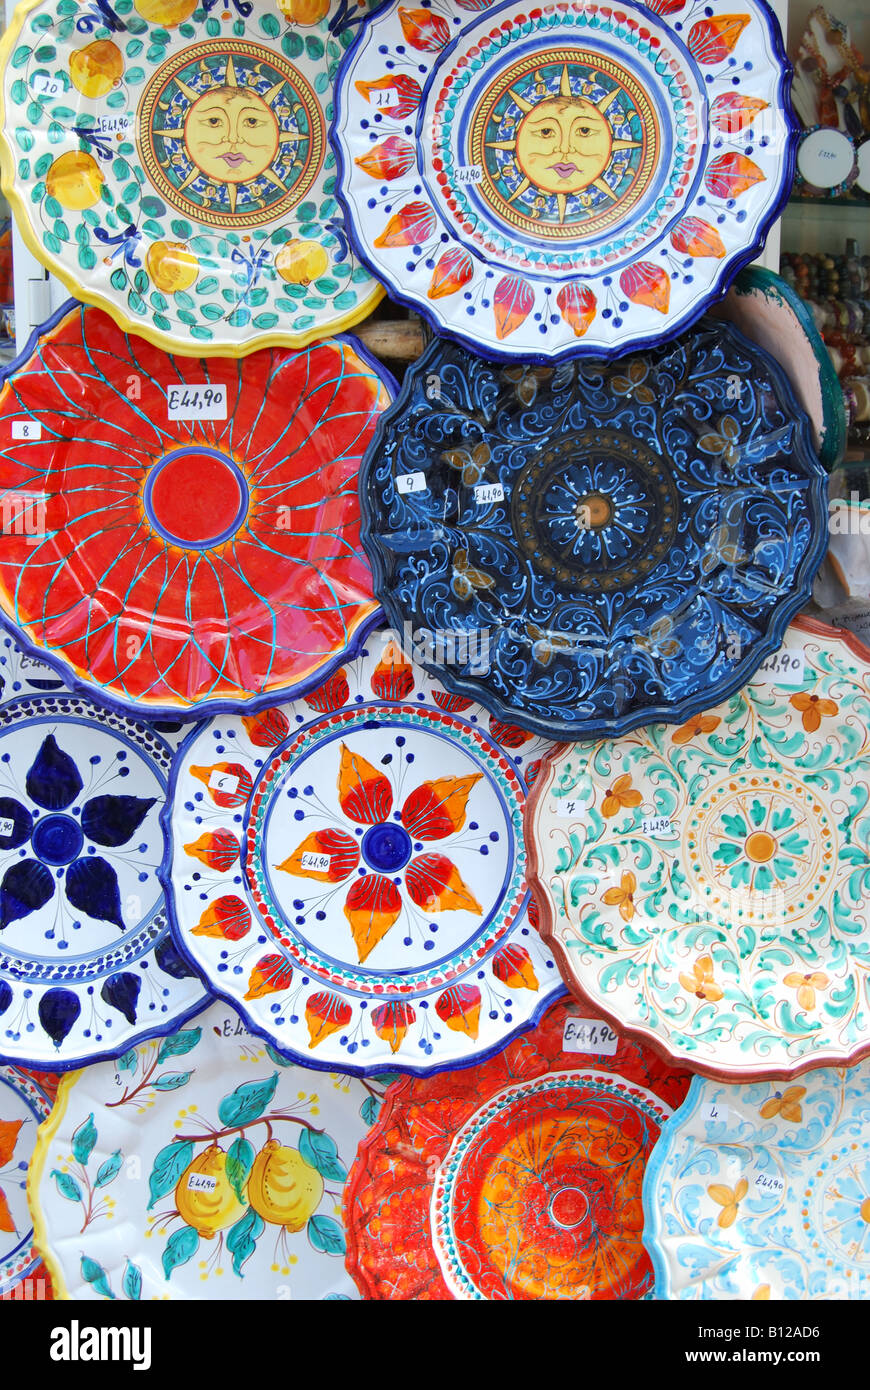 Piastre in ceramica al di fuori del negozio di souvenir, Lipari, Isola di Lipari, Provincia di Messina, Sicilia, Italia Foto Stock